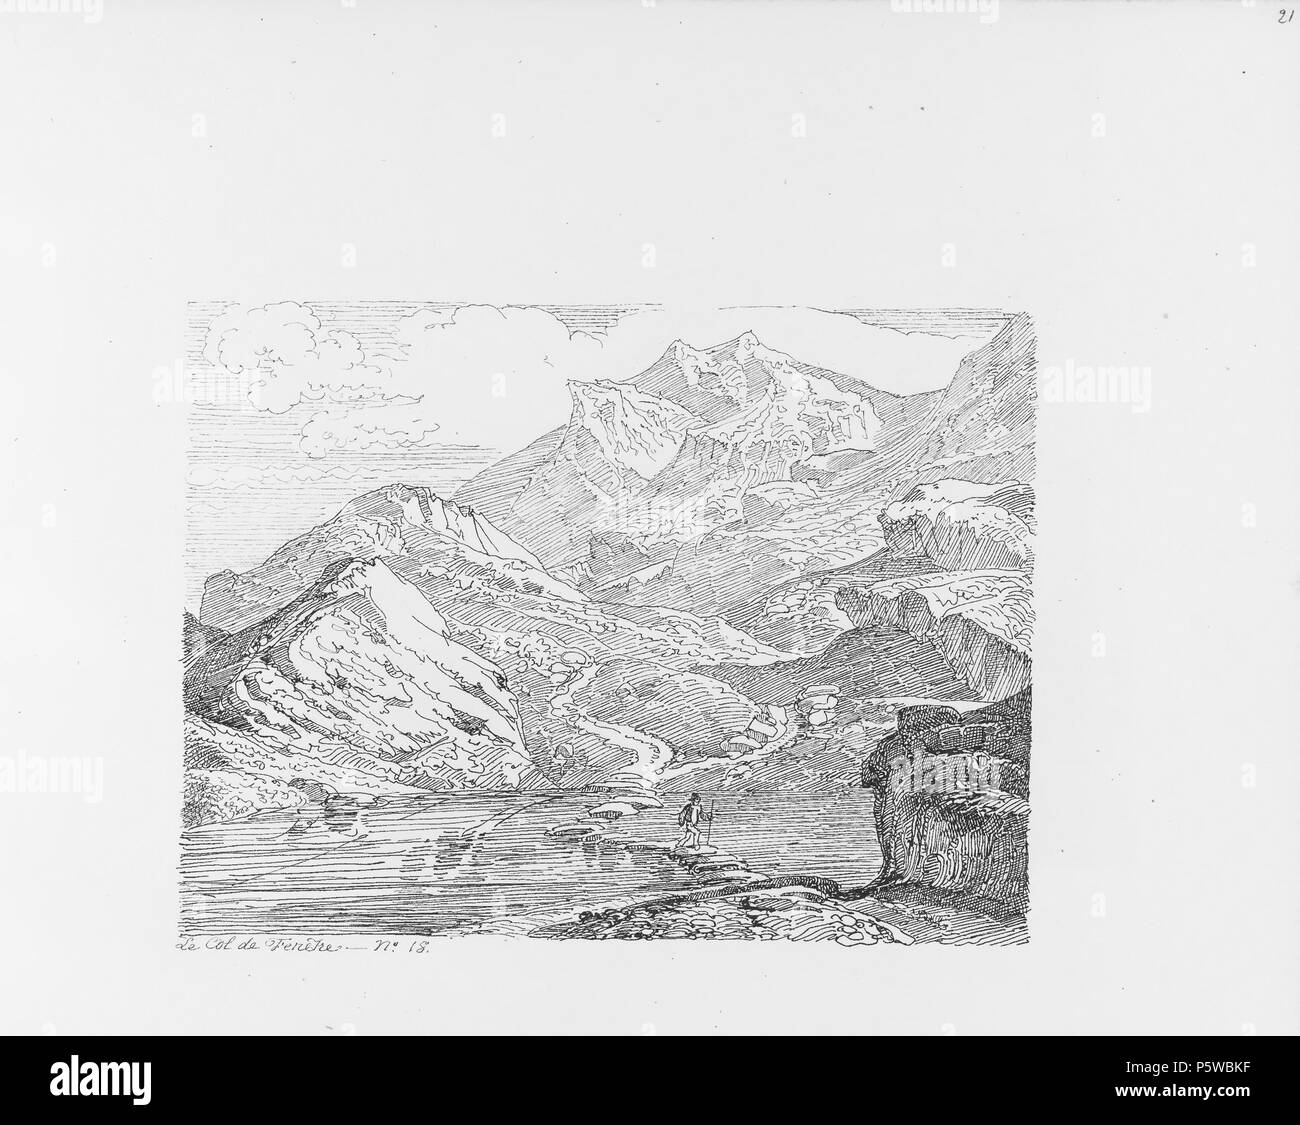 322 CH-NB-Voyage autour du Mont-Blanc dans les vallées d'Hérens de Zermatt et au Grimsel 1843-nbdig-19161-020 Stock Photo